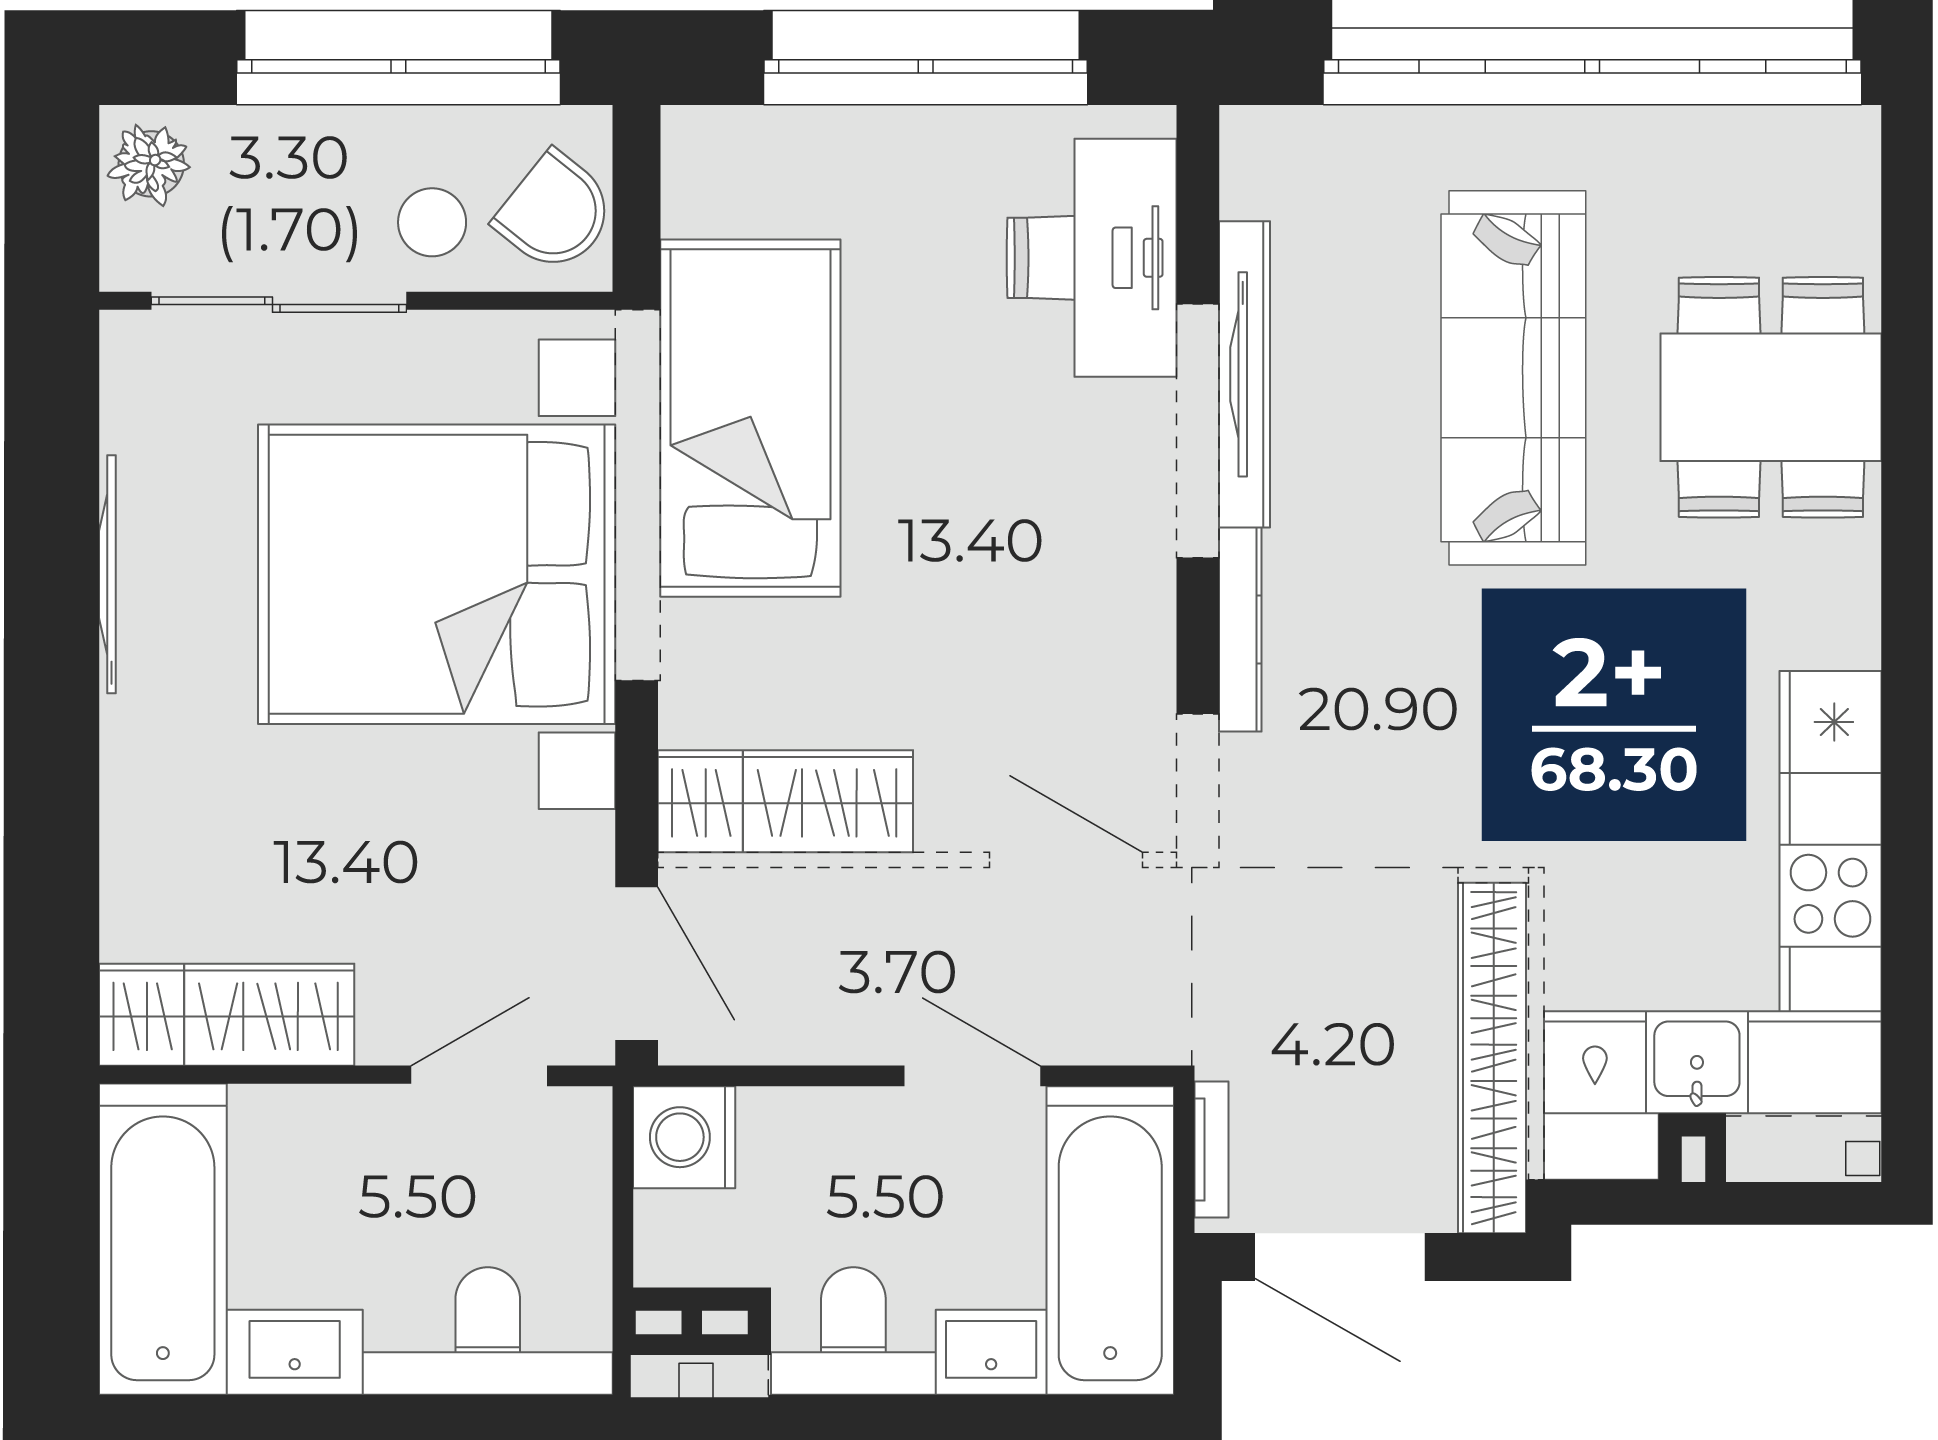 Квартира № 361, 2-комнатная, 68.3 кв. м, 2 этаж